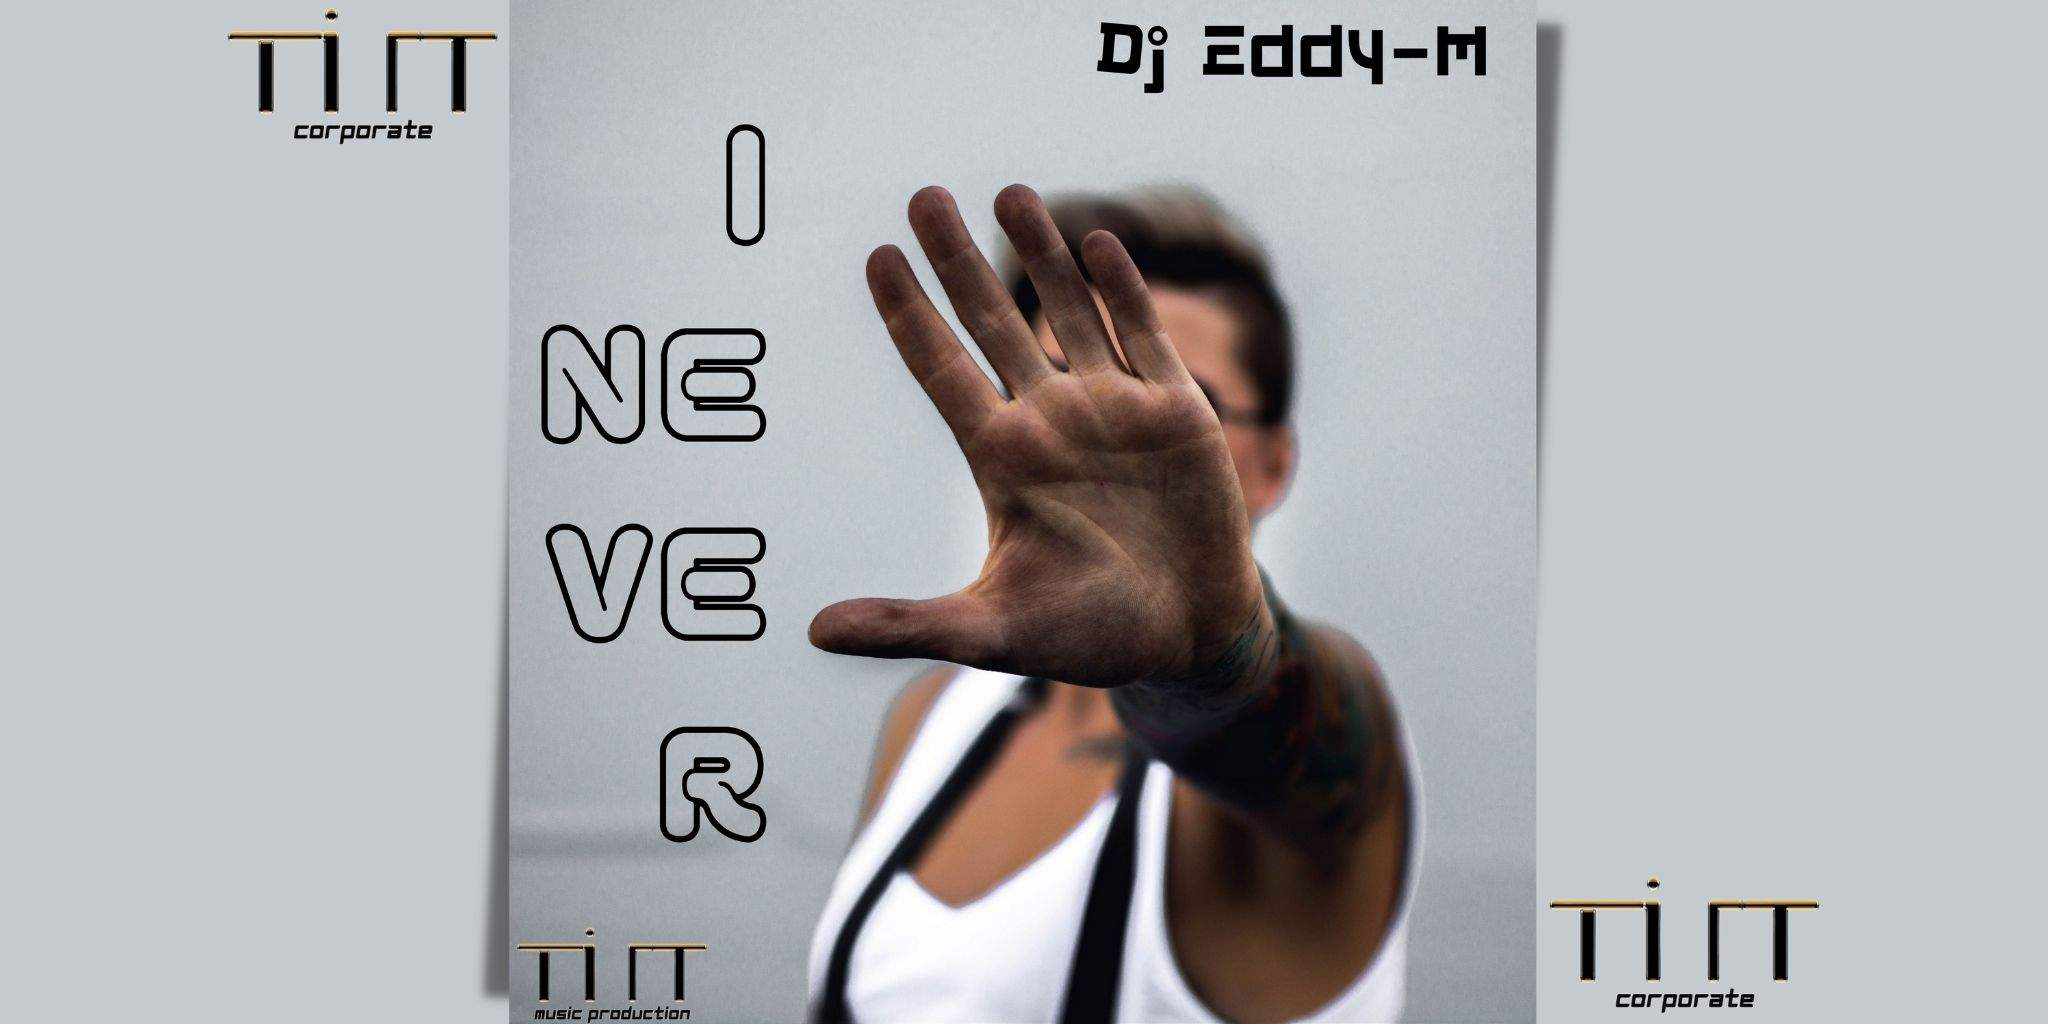 I NEVER è il nuovo singolo di Dj Eddy-M